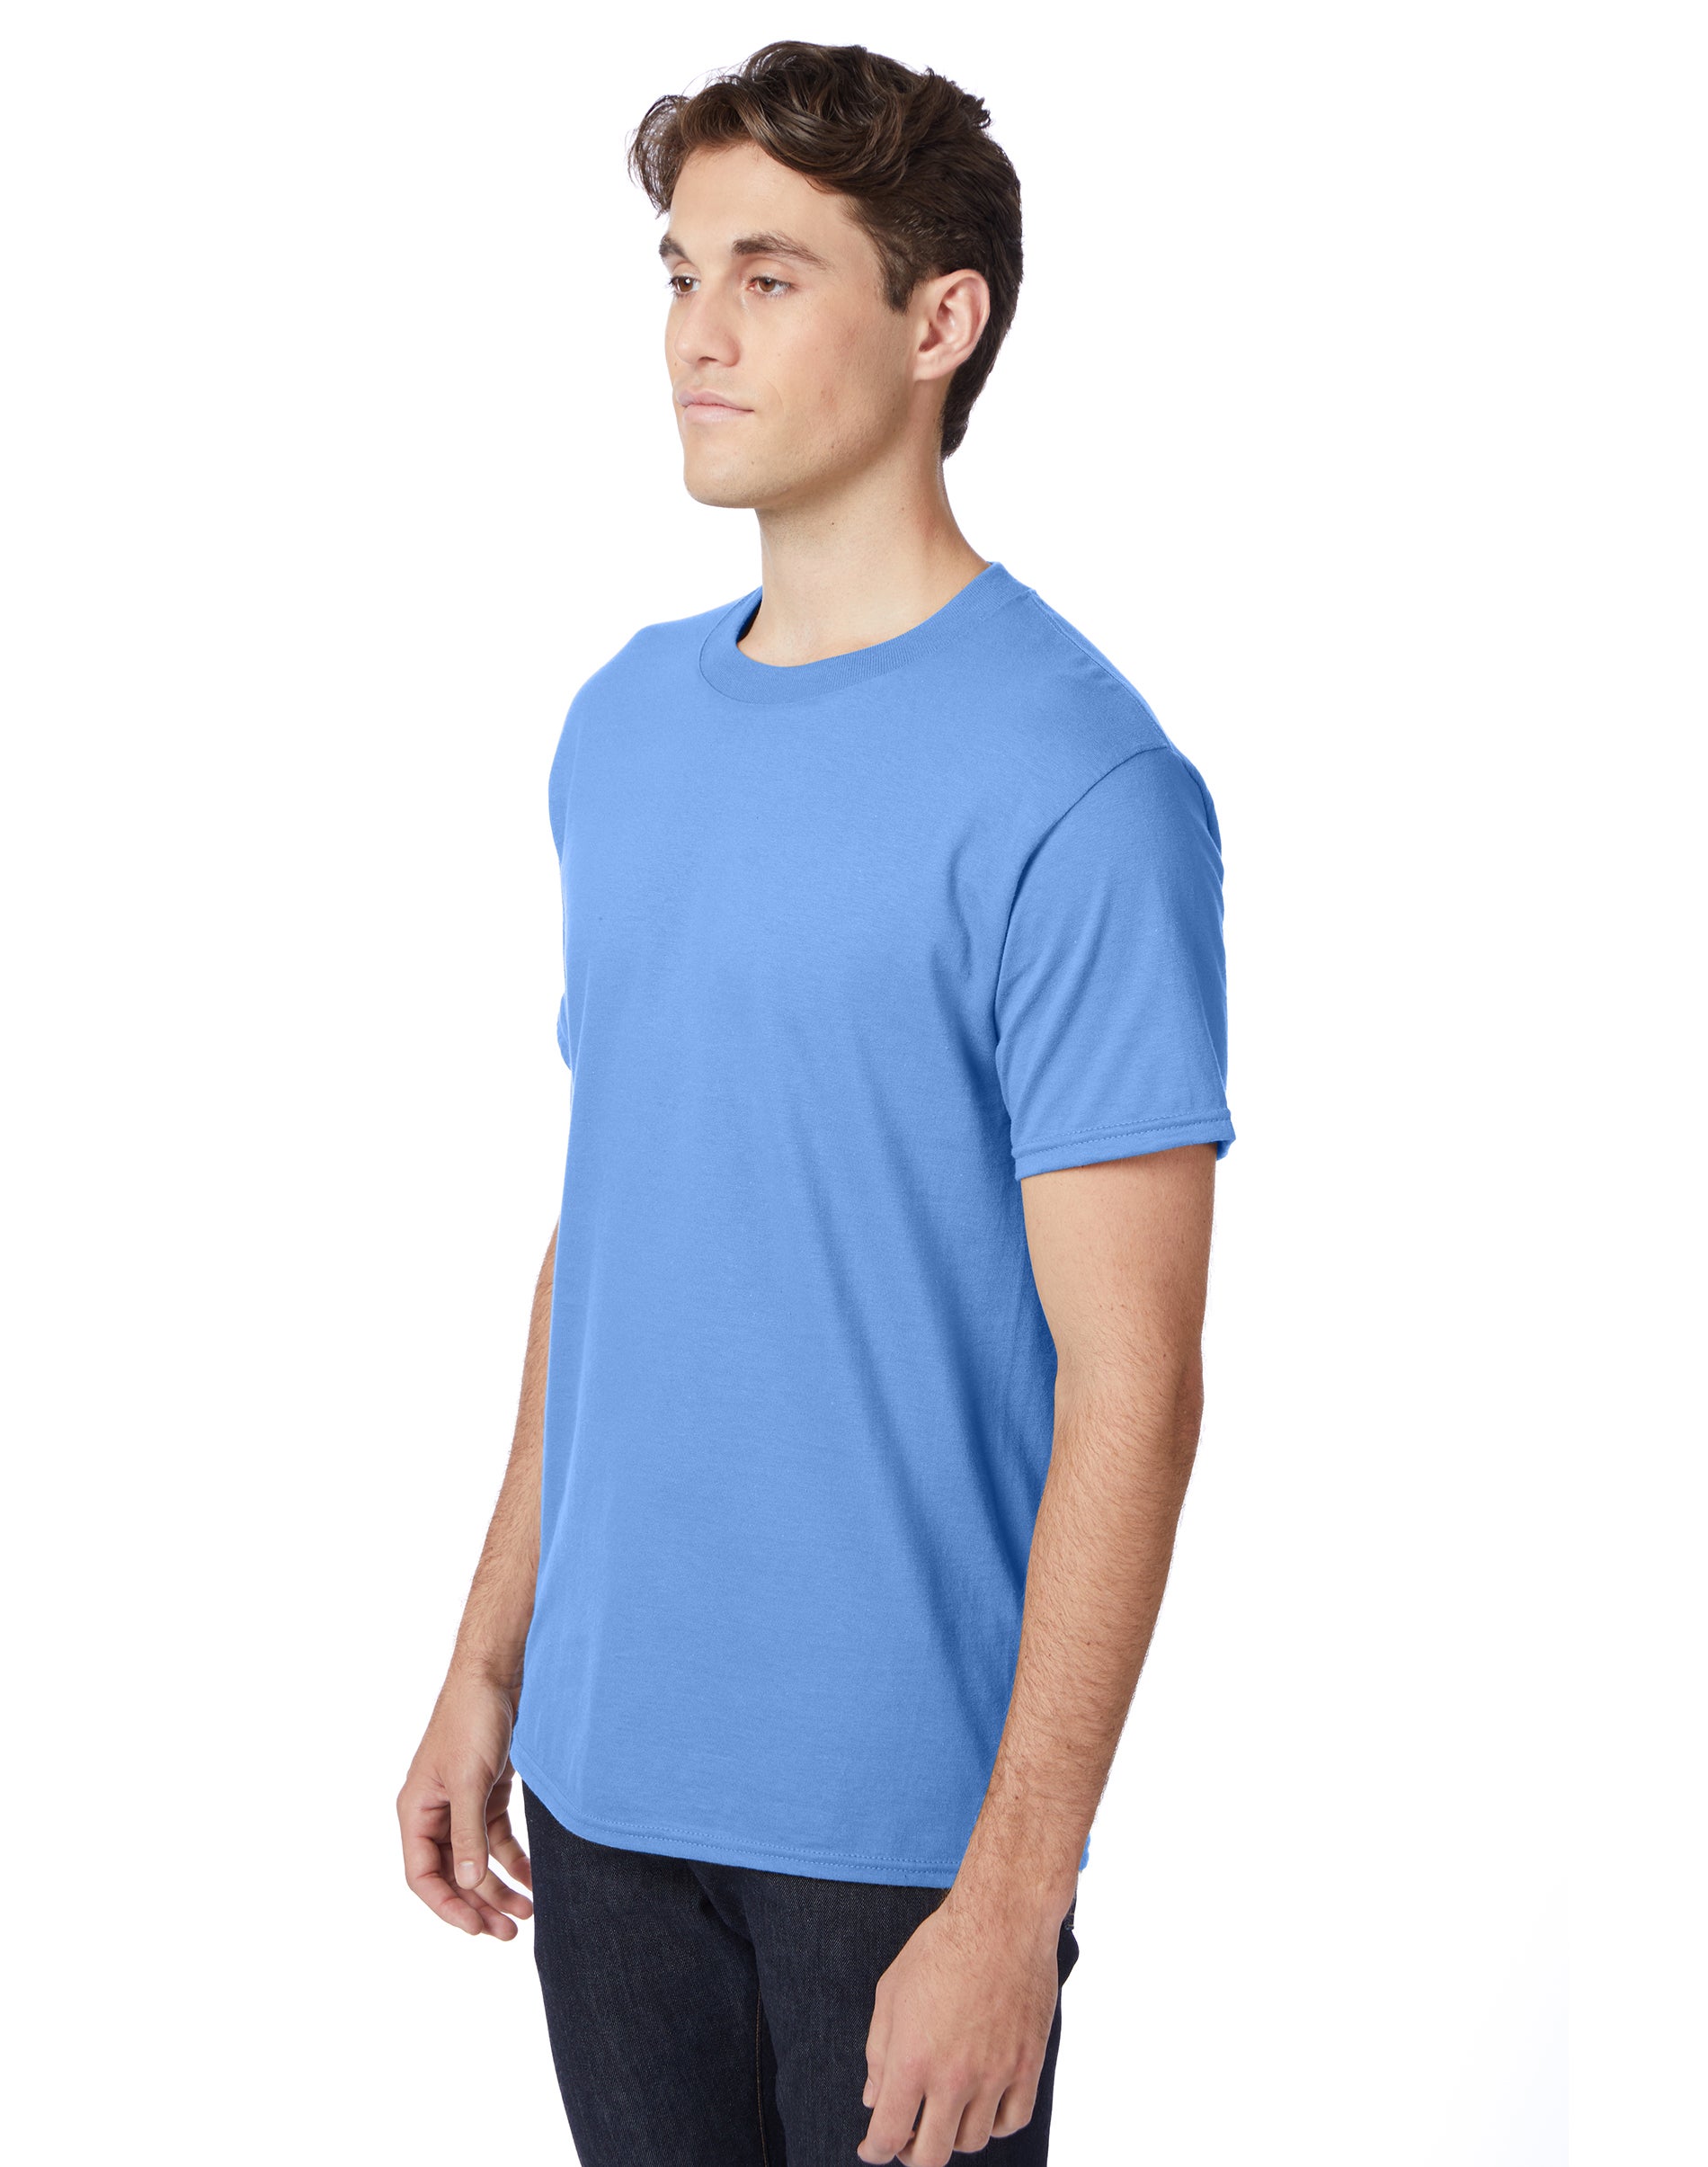 Hanes Beefy-T Unisex Short Sleeve T-Shirt Carolina Blue S - image 4 of 4